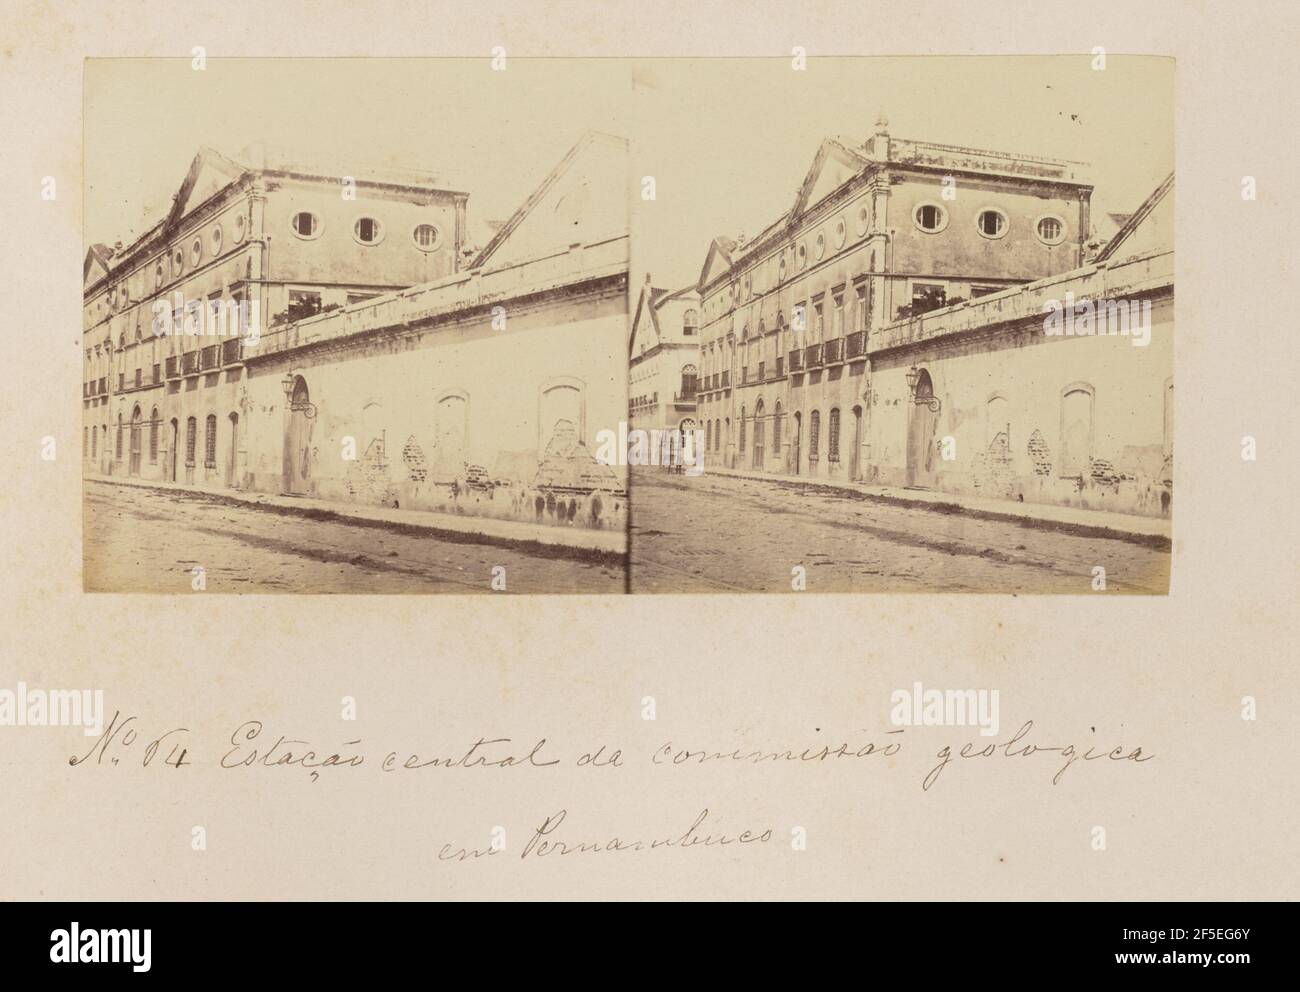 Estação central de comissão geológica em Pernambuco. Marc Ferrez (Brazilian, 1843 - 1923) Stock Photo